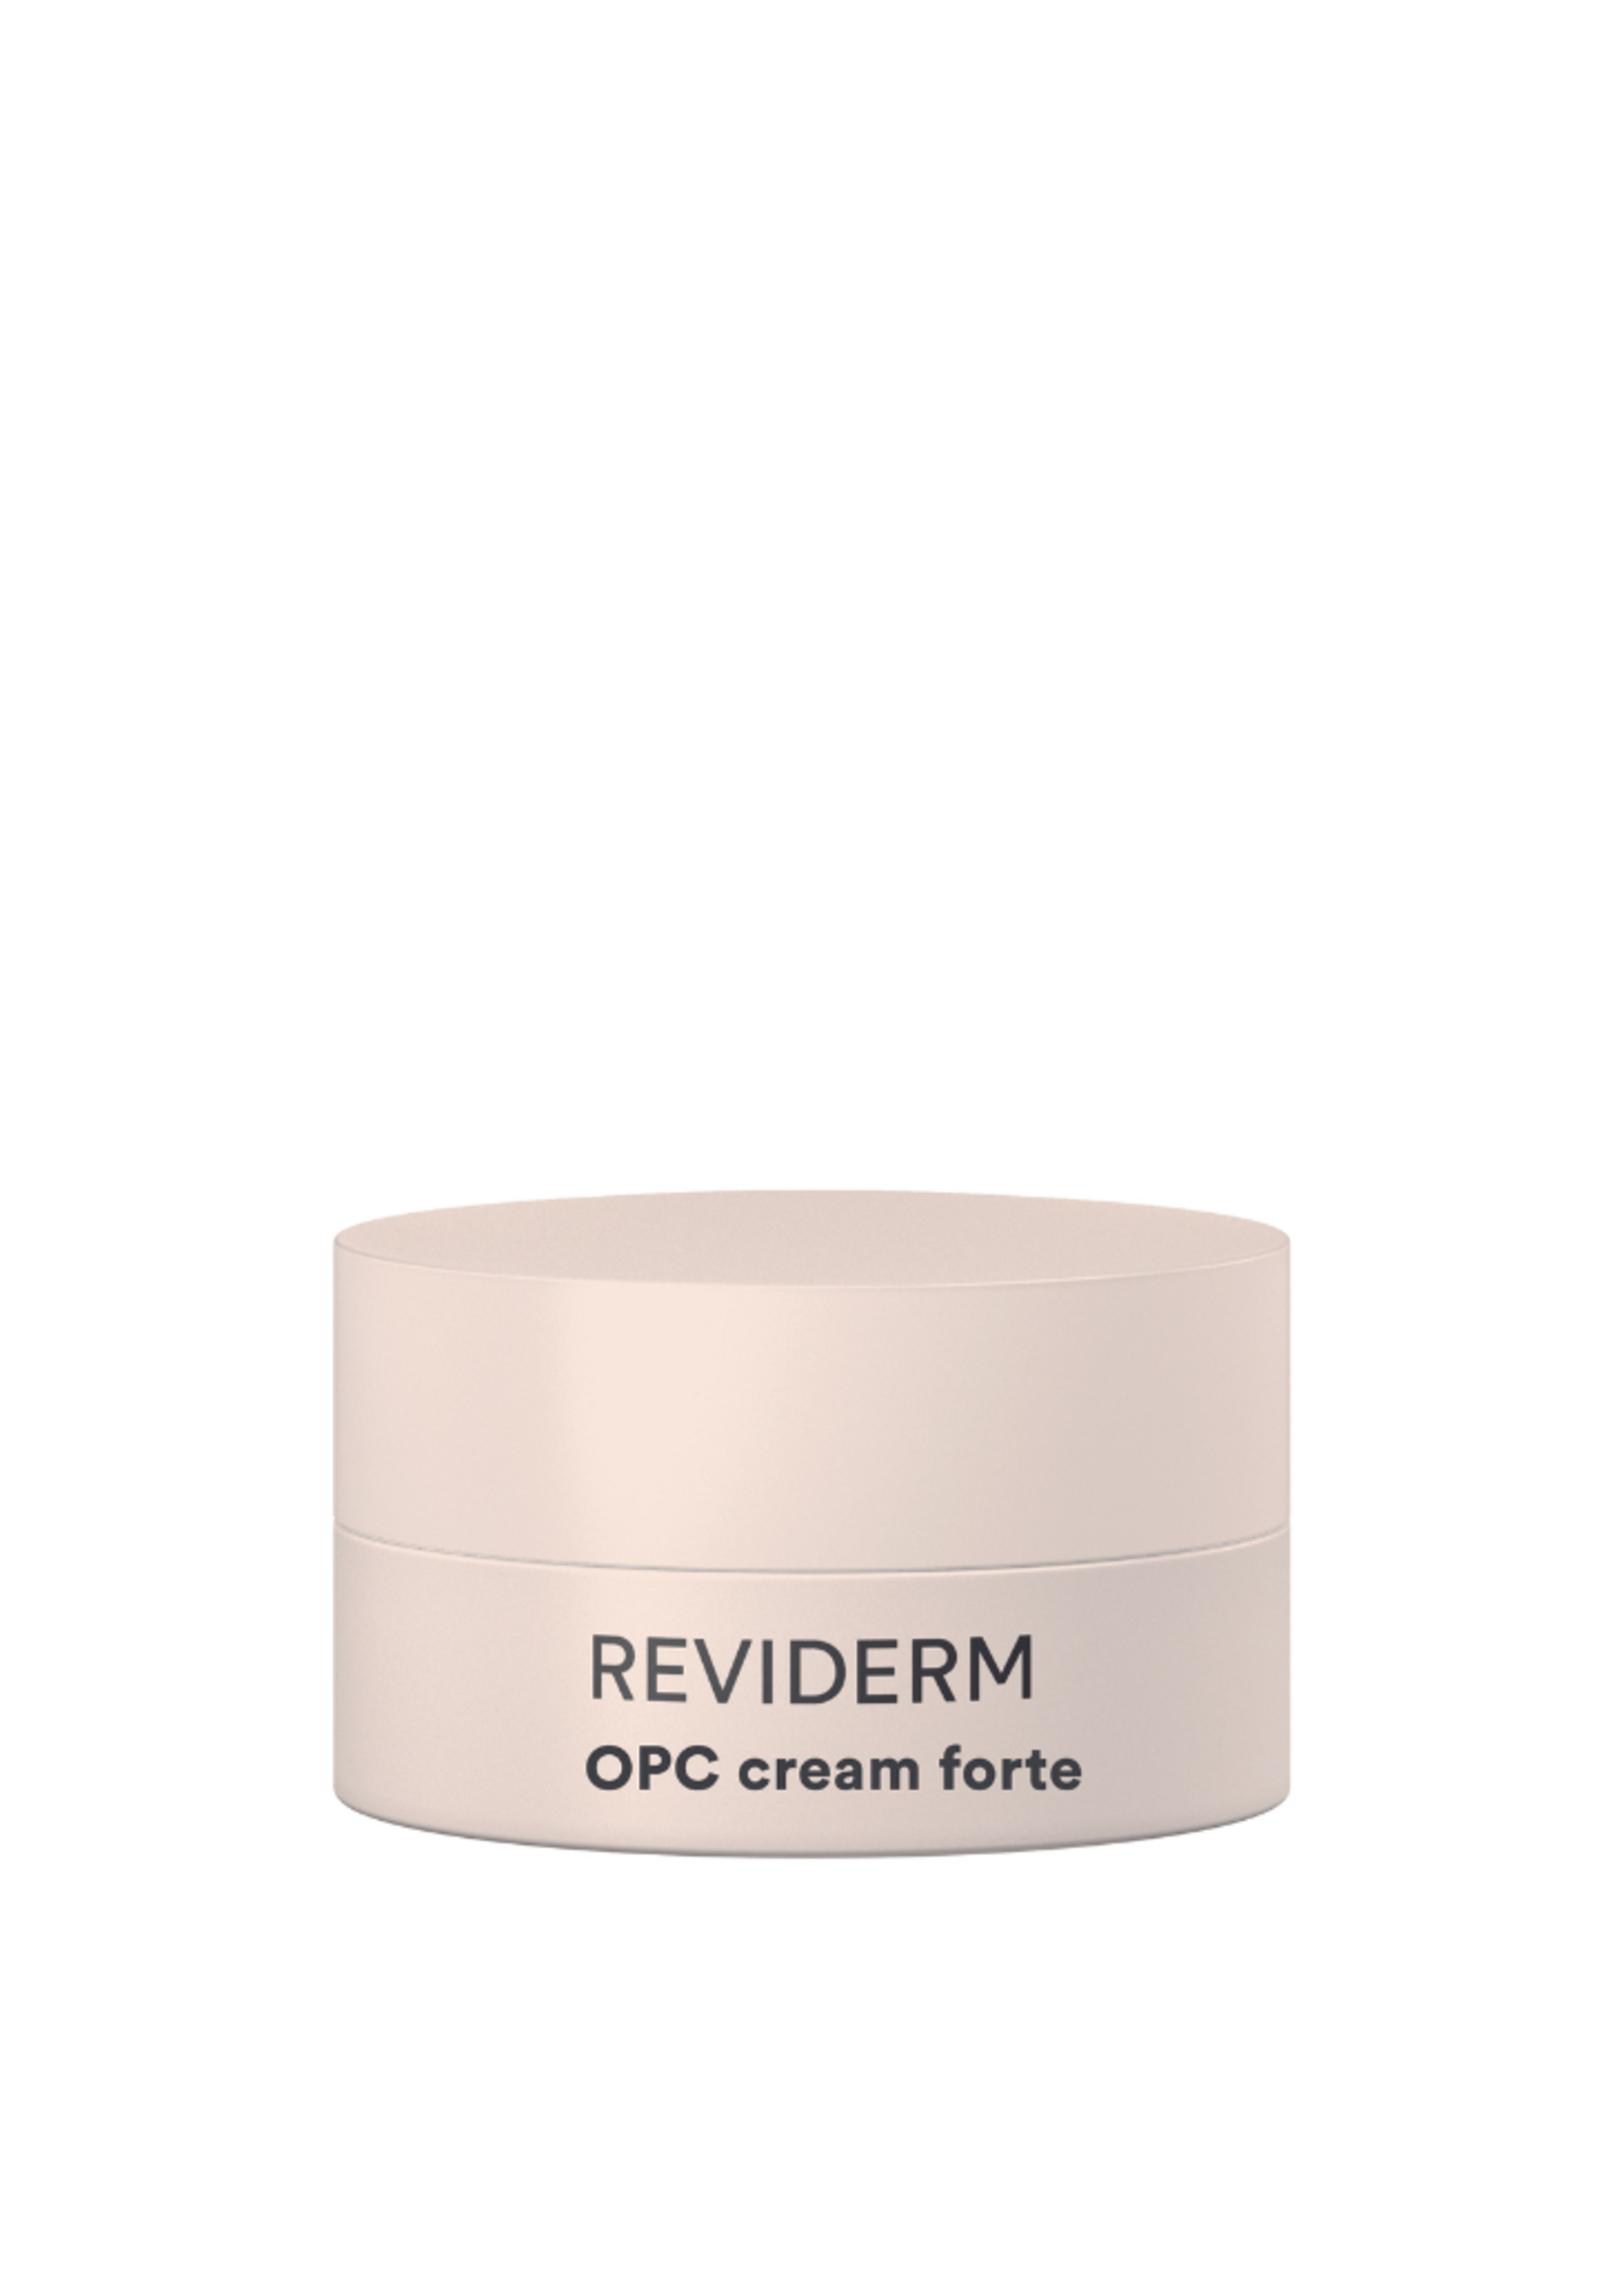 Reviderm OPC Cream Forte - MINI -  15 ml